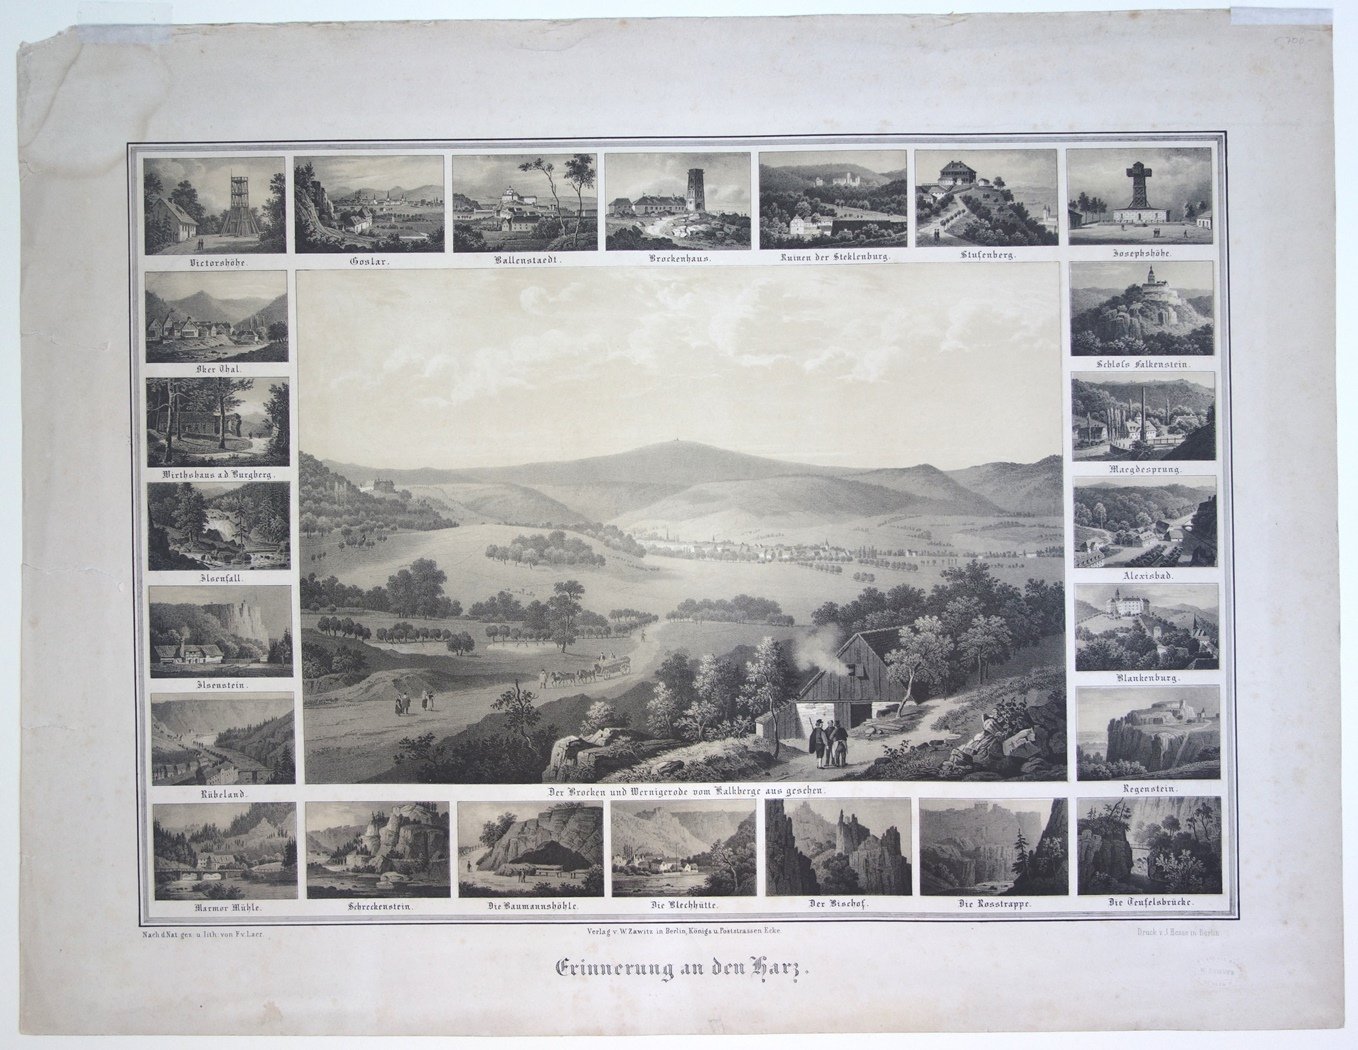 Wernigerode: Souvenirblatt mit 24 Teilansichten und einer Gesamtansicht von Wernigerode, um 1845 (Schloß Wernigerode GmbH RR-F)